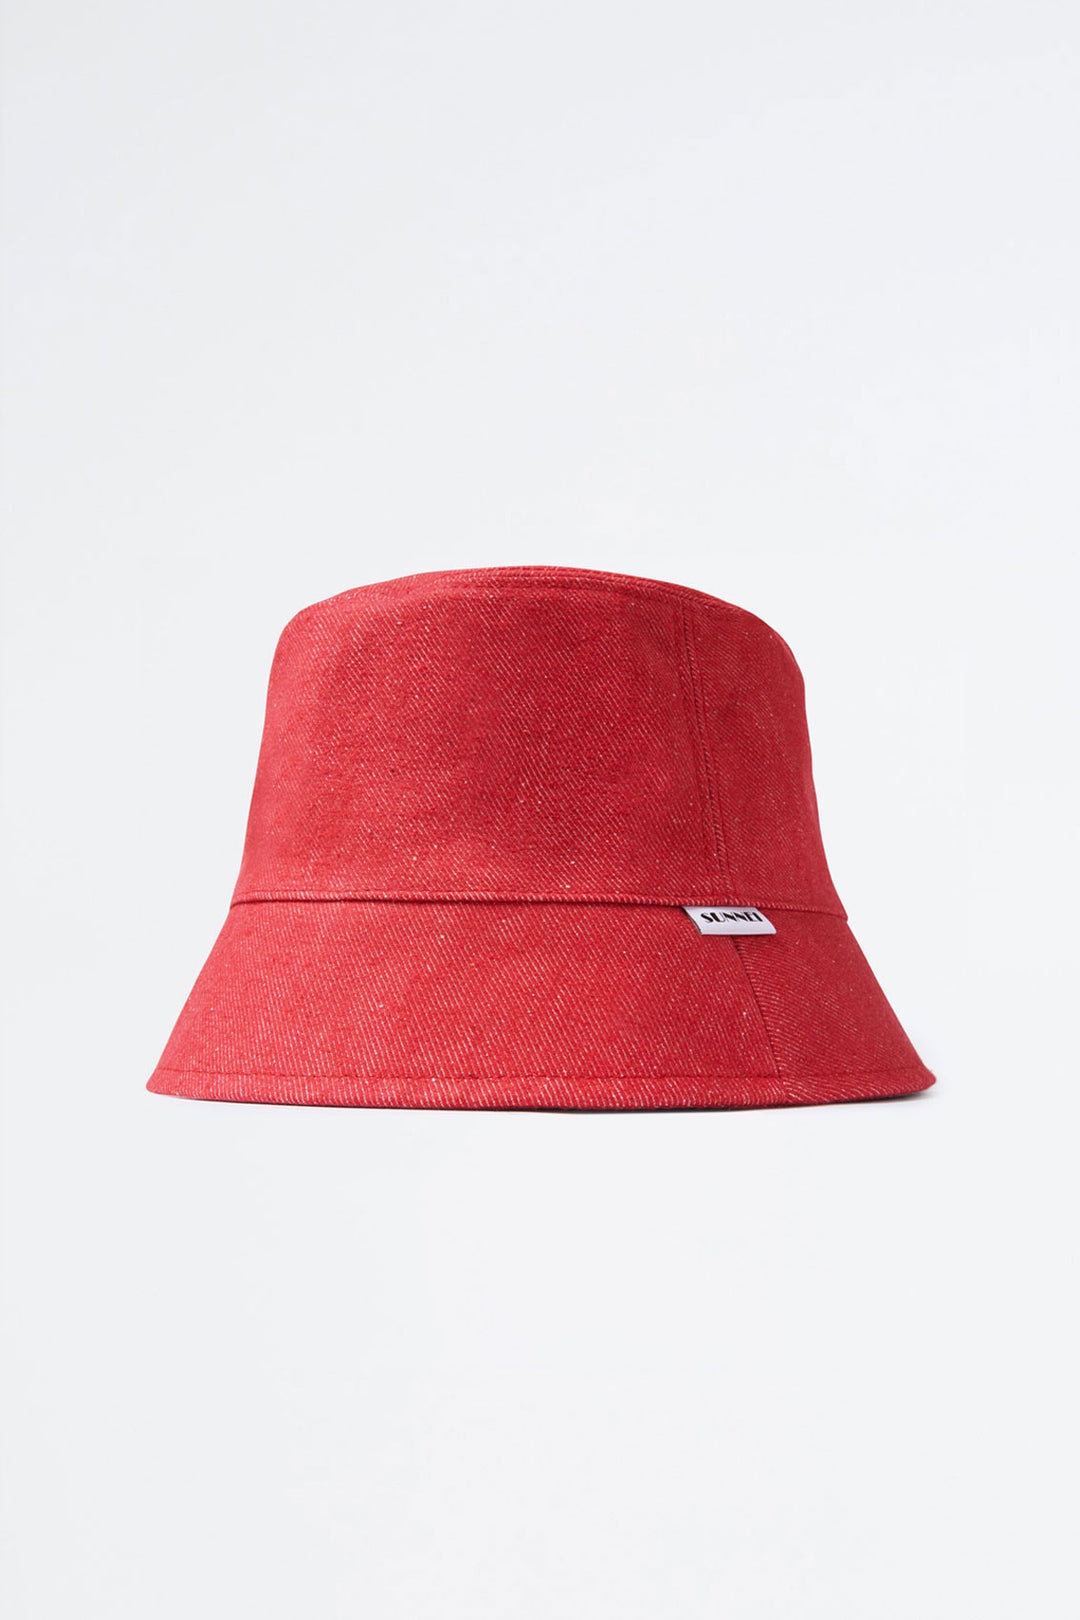 RED REVERSIBLE BUCKET HAT - 1